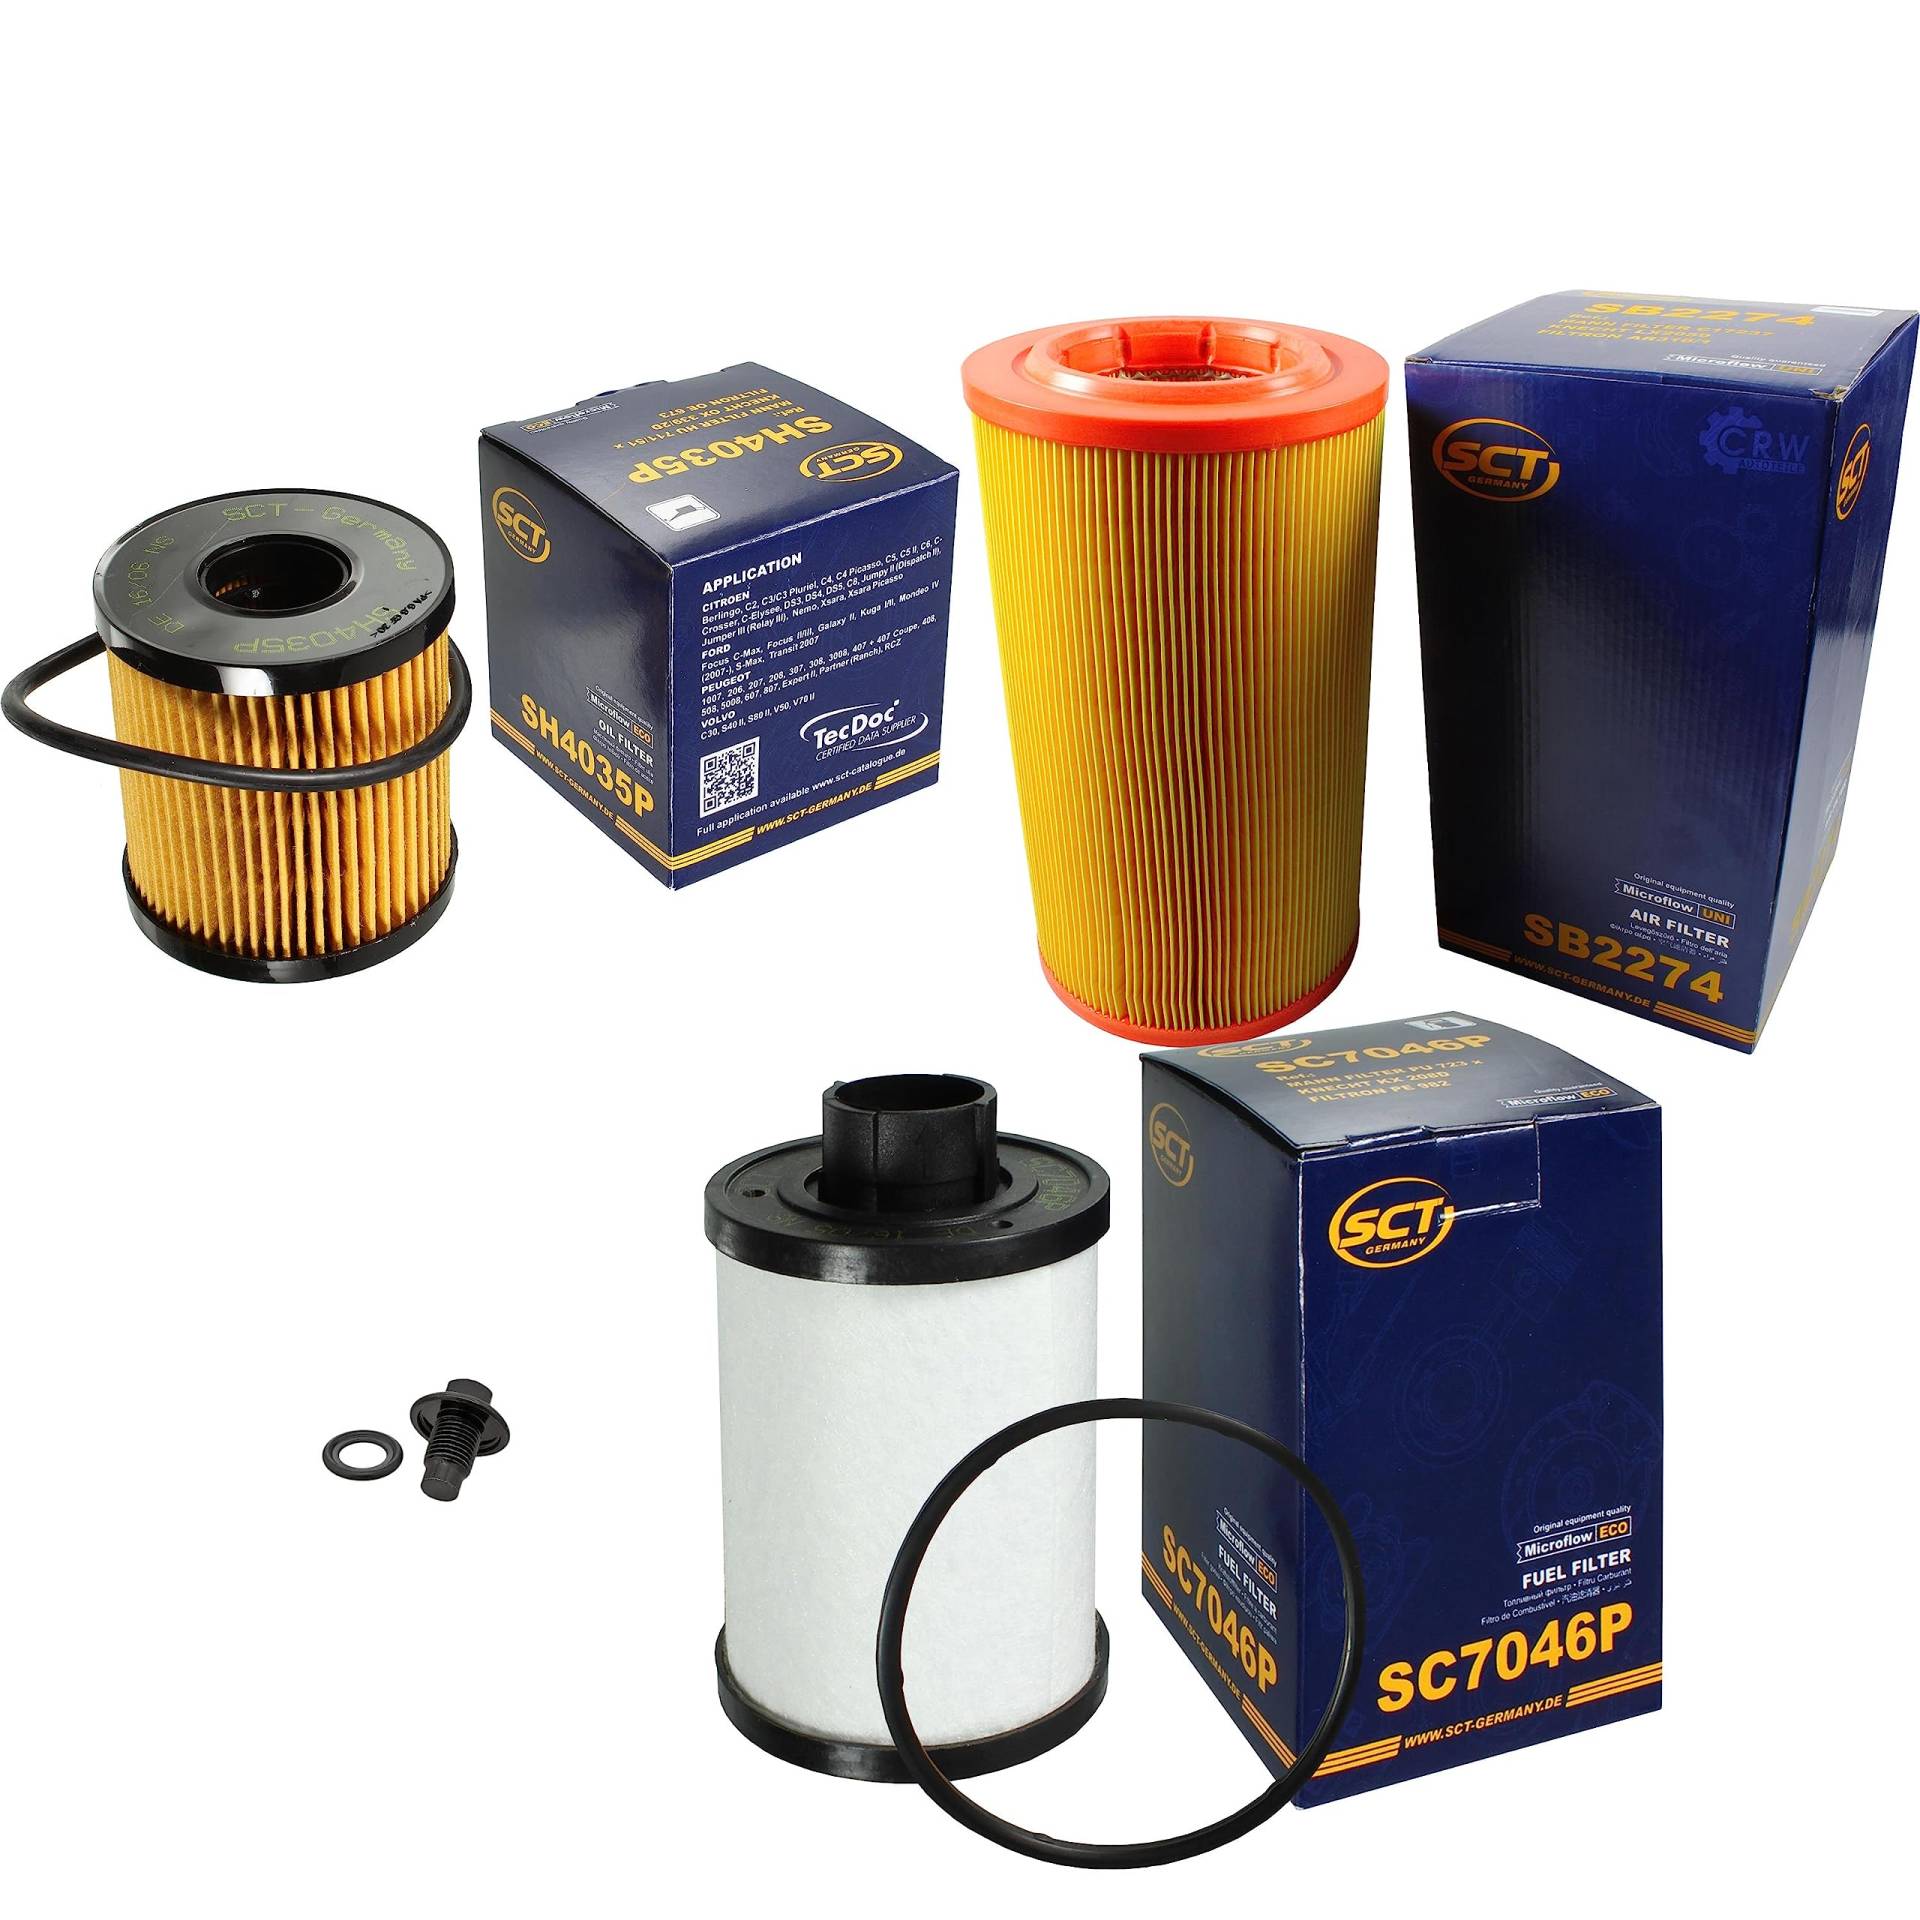 Inspektionspaket Wartungspaket Filterset mit Ölfilter SH 4035 P, Luftfilter SB 2274, Kraftstofffilter SC 7046 P, Verschlussschraube von EISENFELS